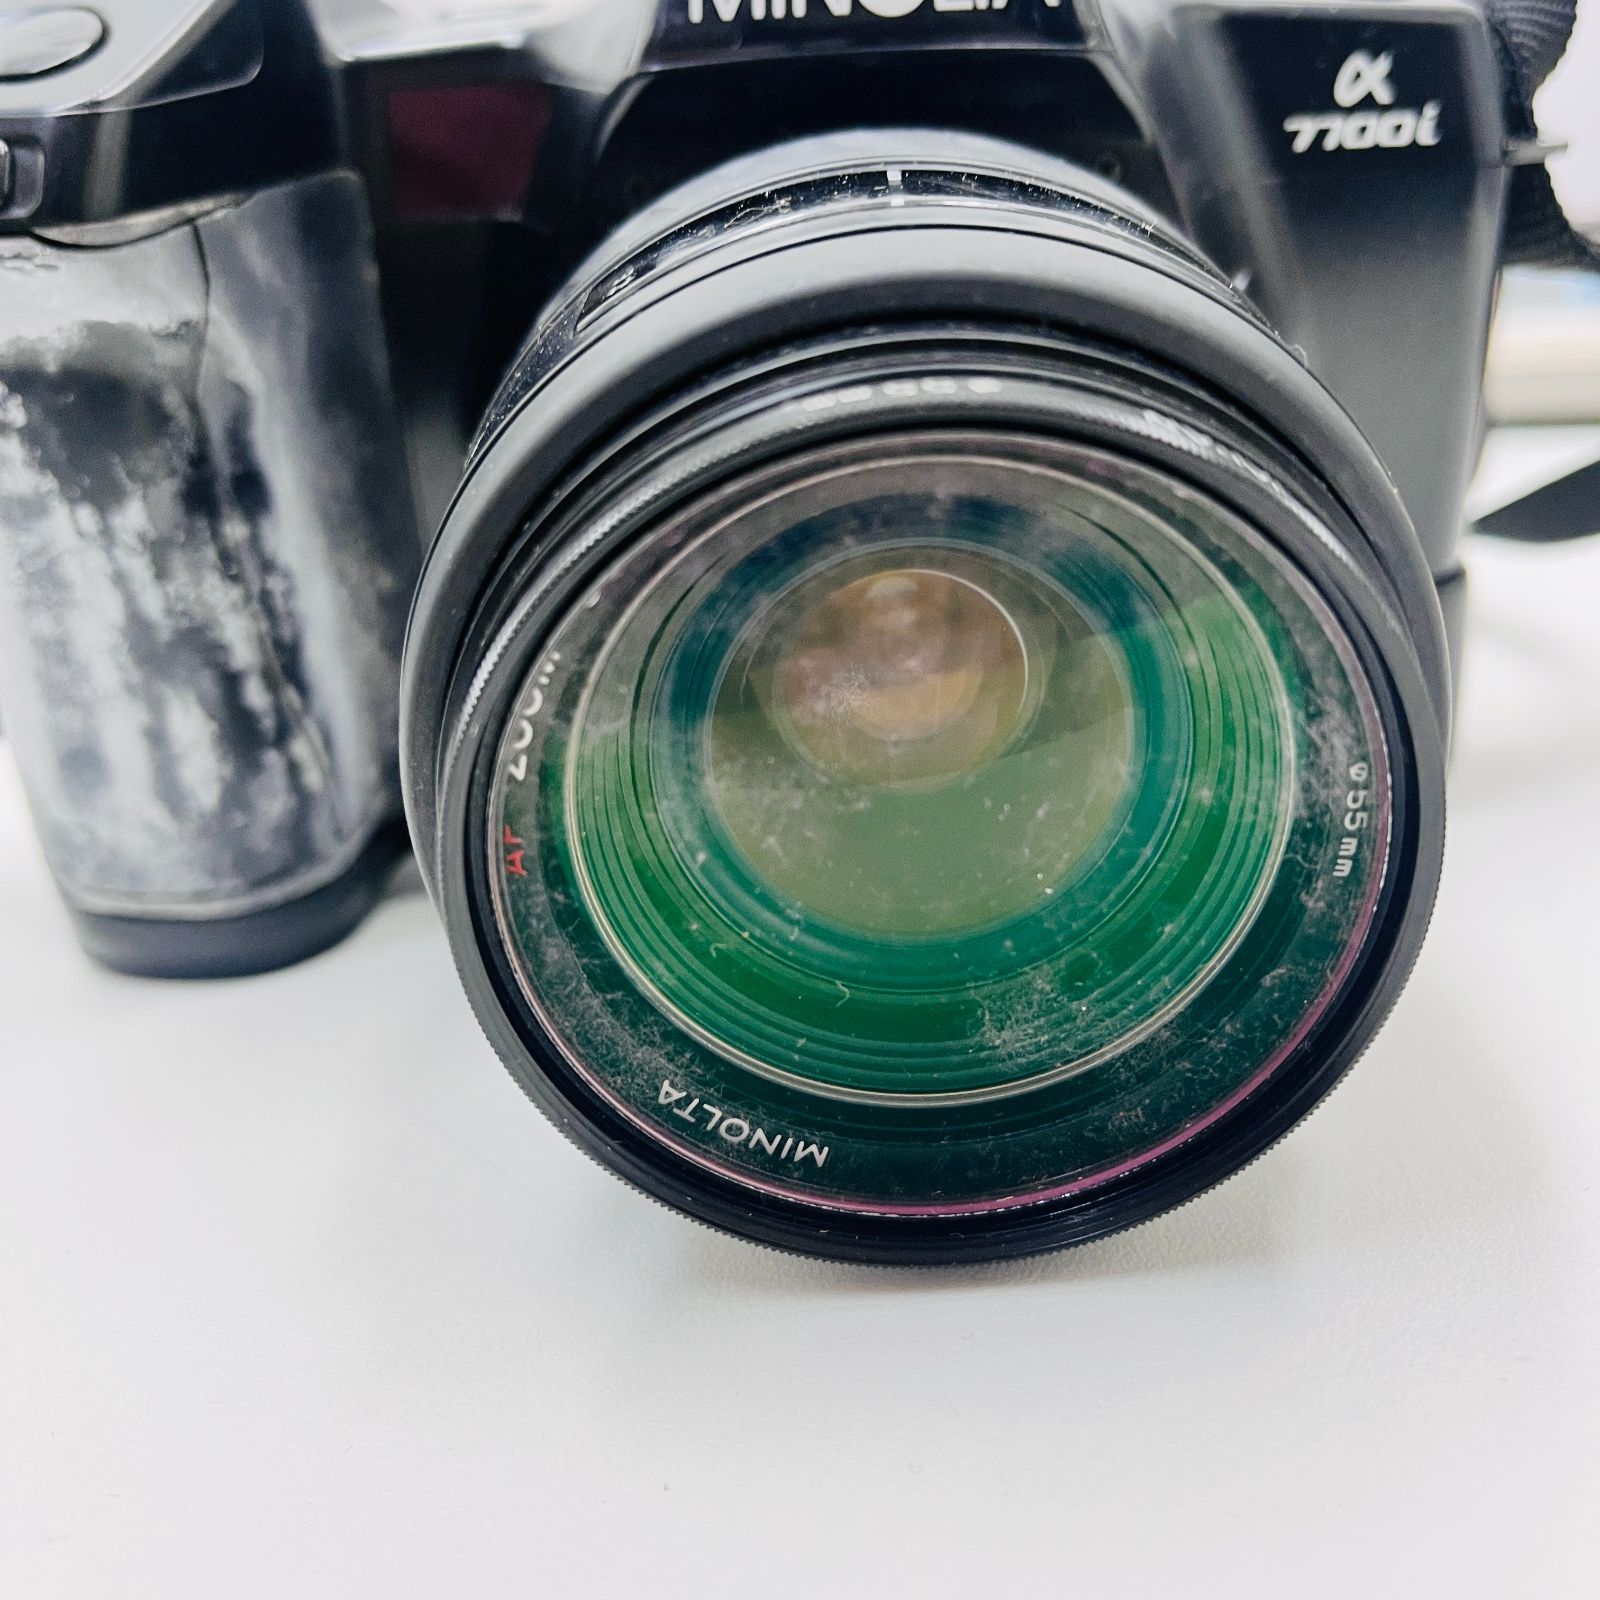 フィルムカメラ MINOLTA α-7700i PROGRAM 3200i 【海外正規品】 - フィルムカメラ